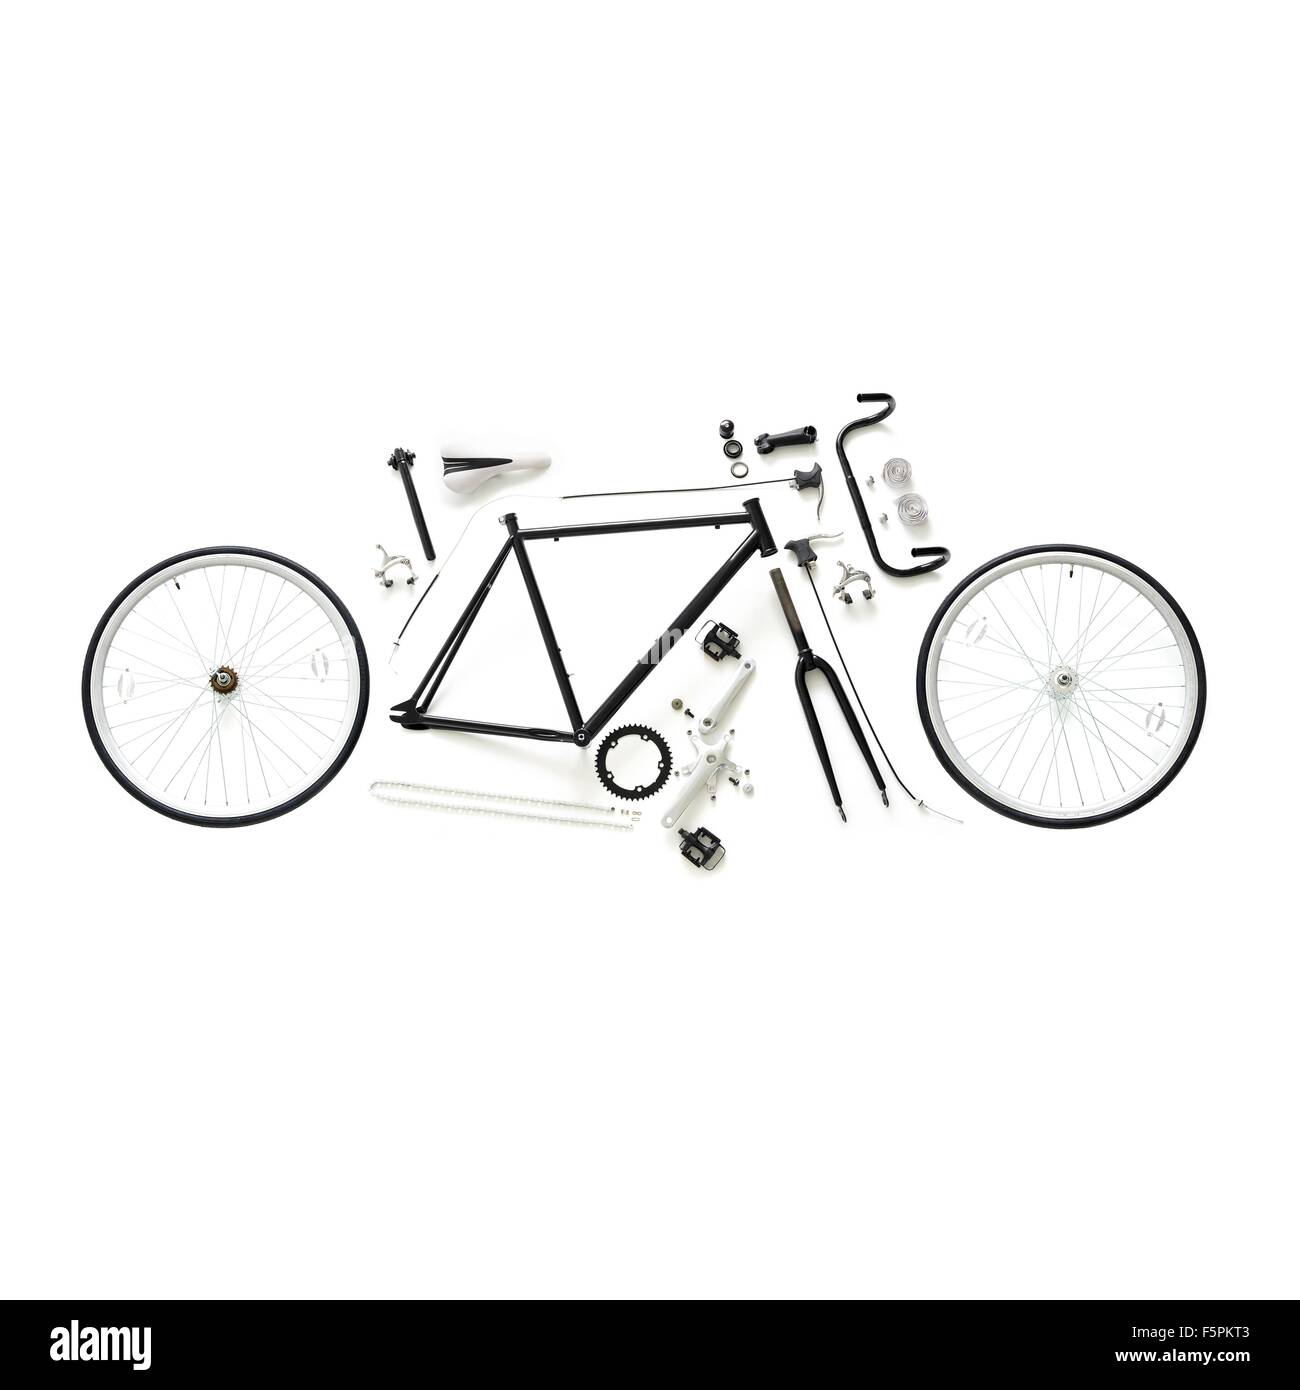 Componenti di un fixed-gear road bike contro uno sfondo bianco. Foto Stock